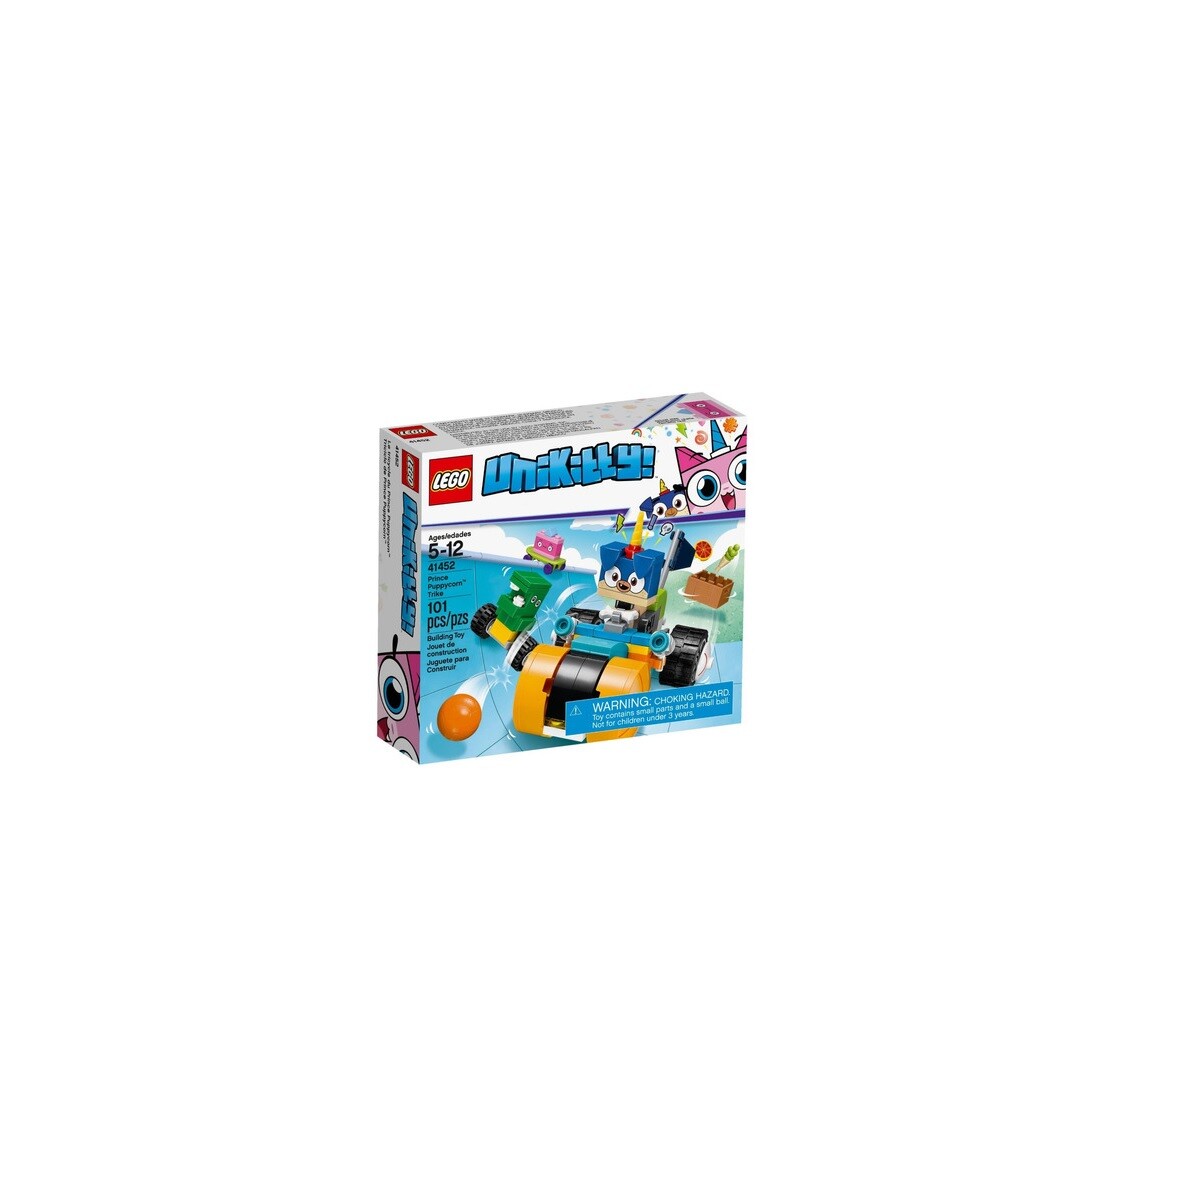 LEGO Unikitty - Único 